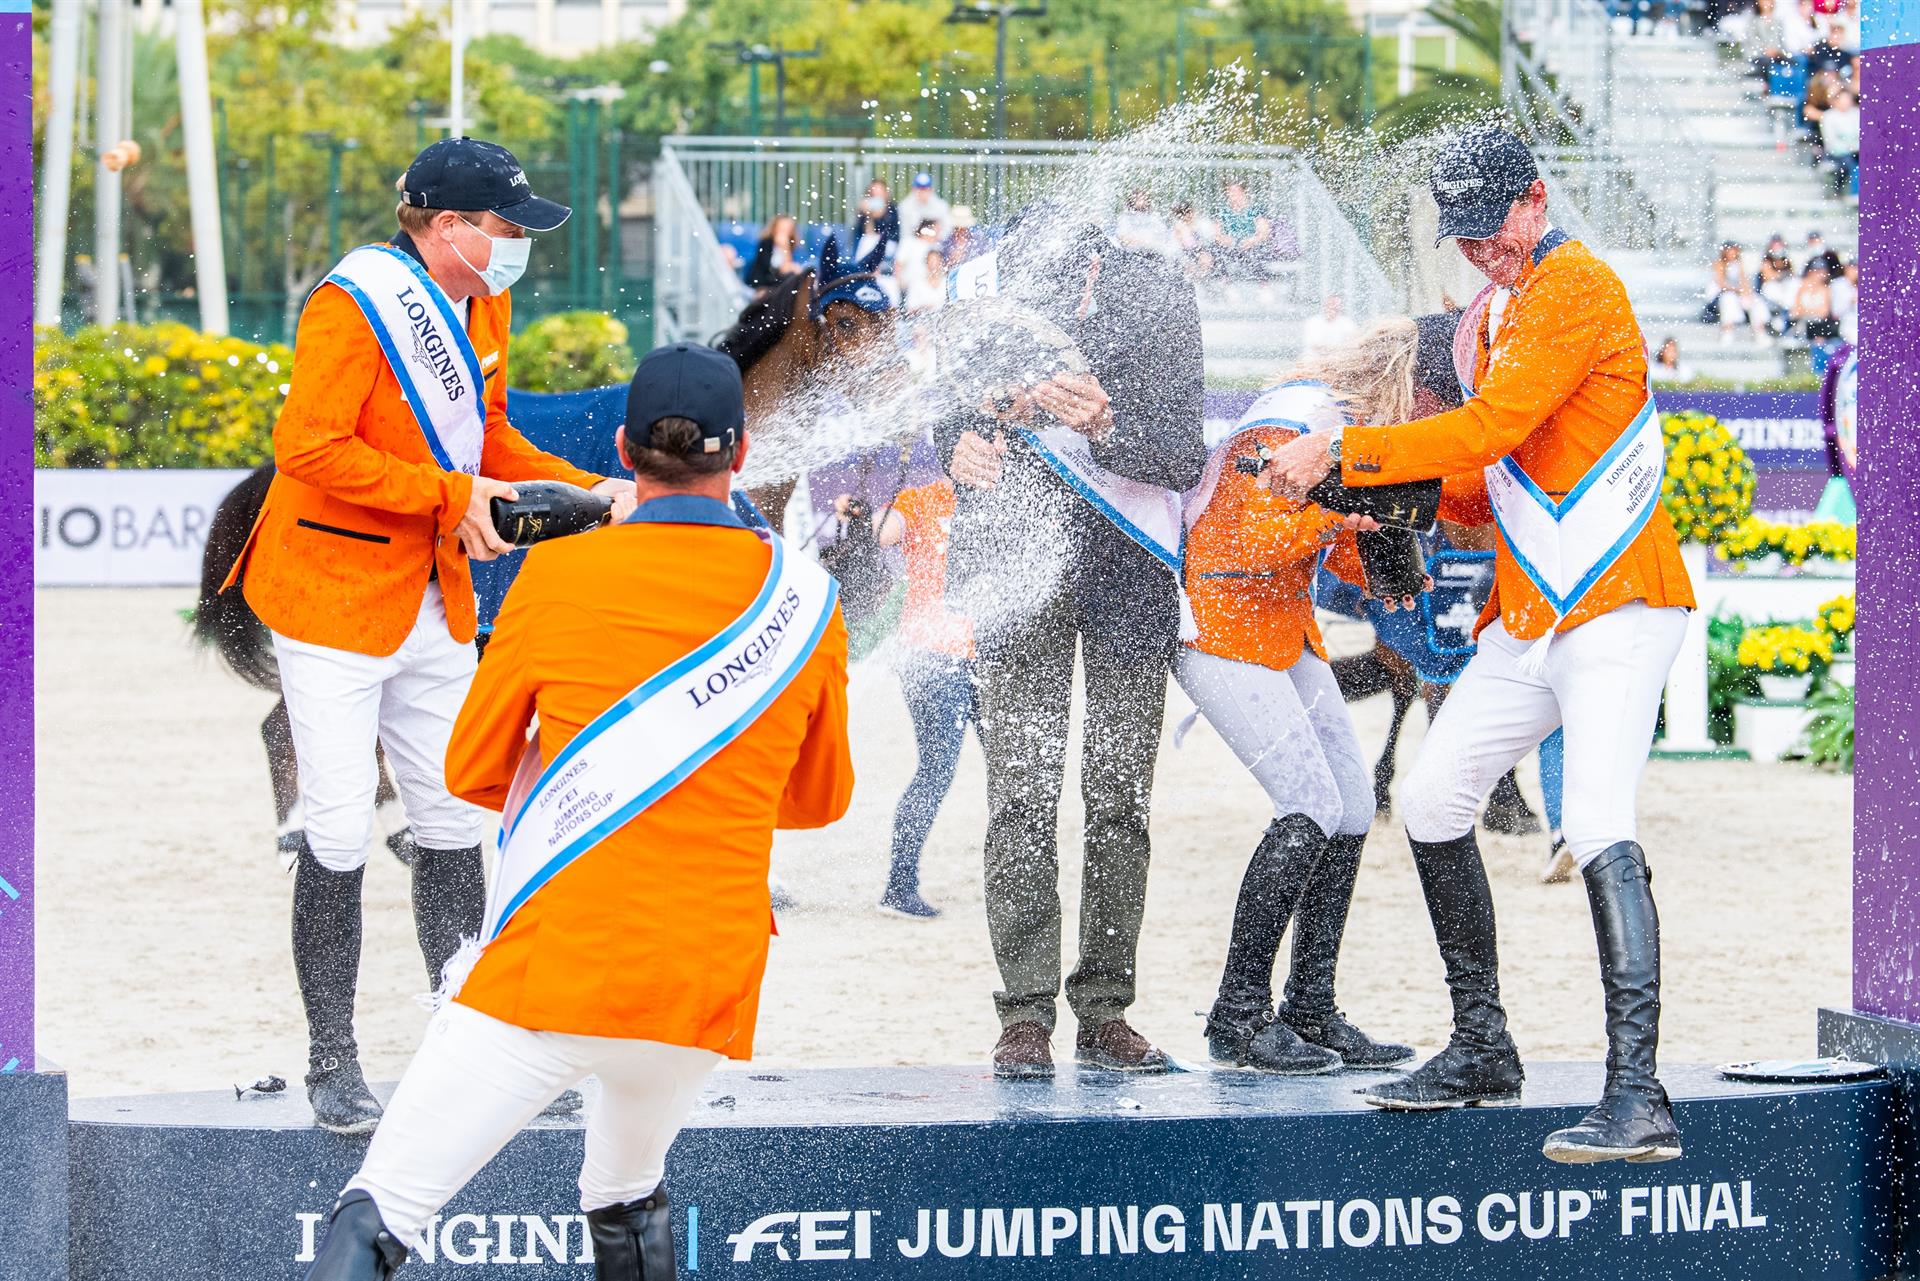 El equipo de Países Bajos celebra la victoria en la Copa de Naciones de salto a caballo, disputada este fin de semana en Barcelona. EFE/Lukasz Kowalski/Federación Ecuestre Internacional (FEI)/SOLO USO EDITORIAL/SOLO DISPONIBLE